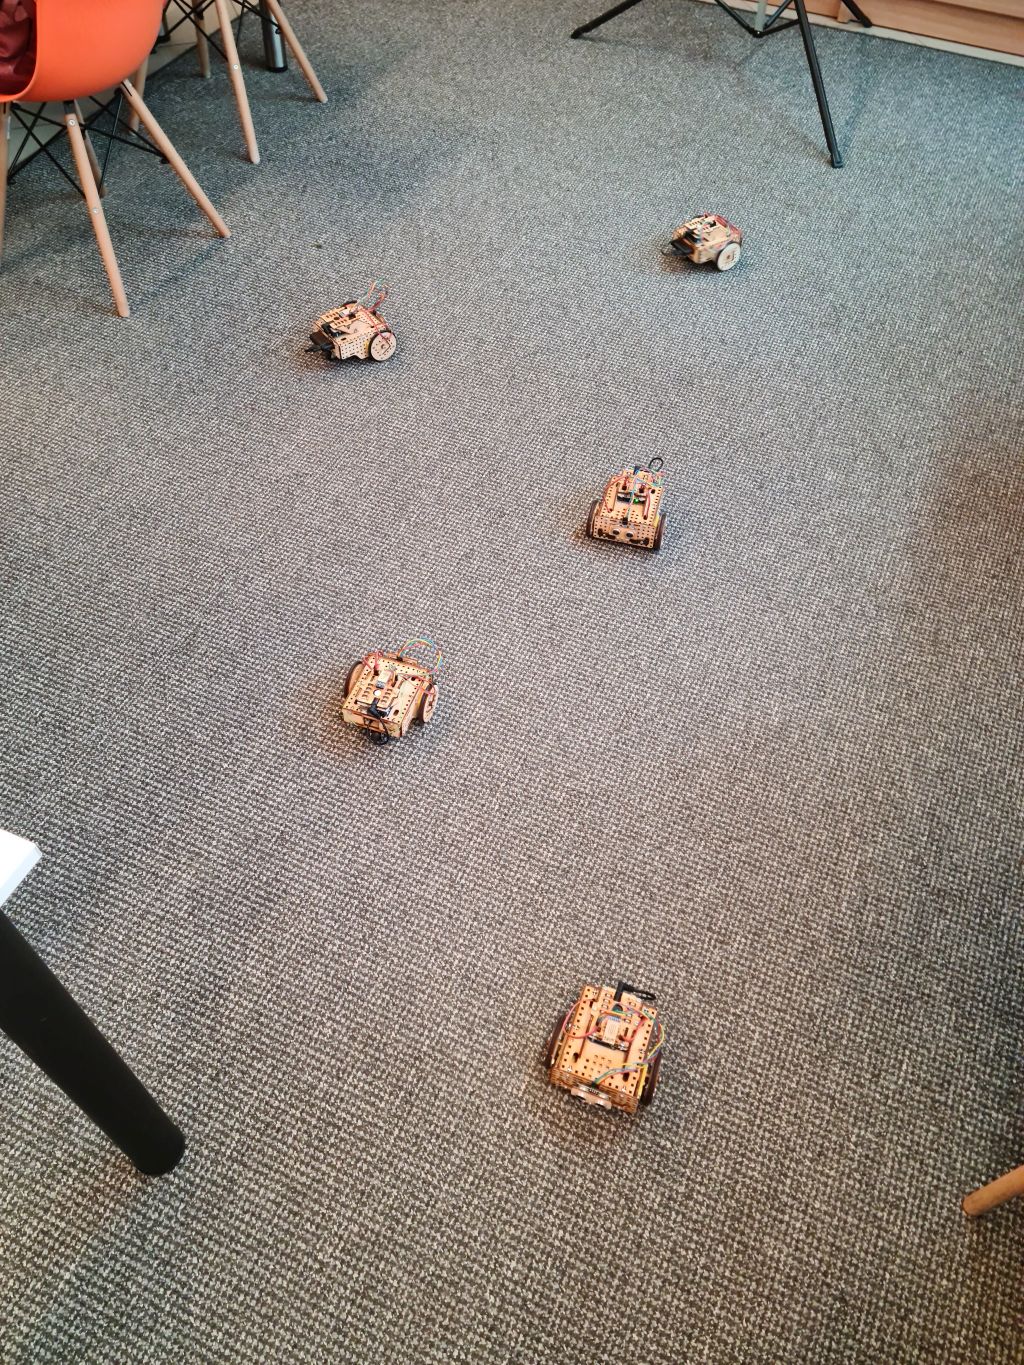 Widok z góry na pięć małych robotów ze sklejki umiejscowionych na podłodze.